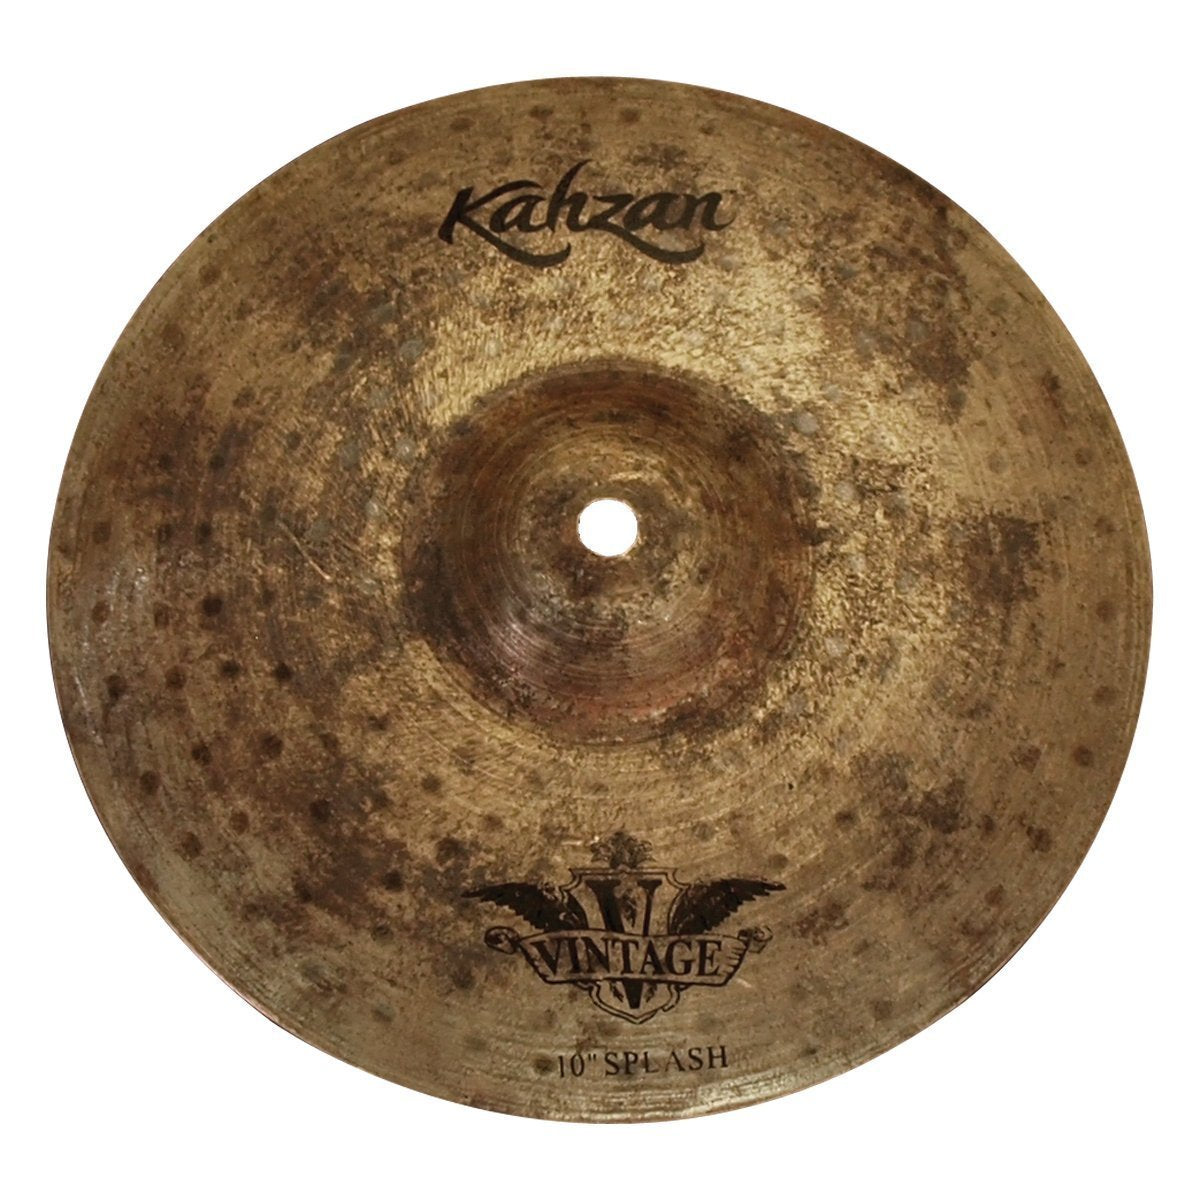 Kahzan 'Vintage Series' Splash Cymbal (10")-KC-VIN-10S